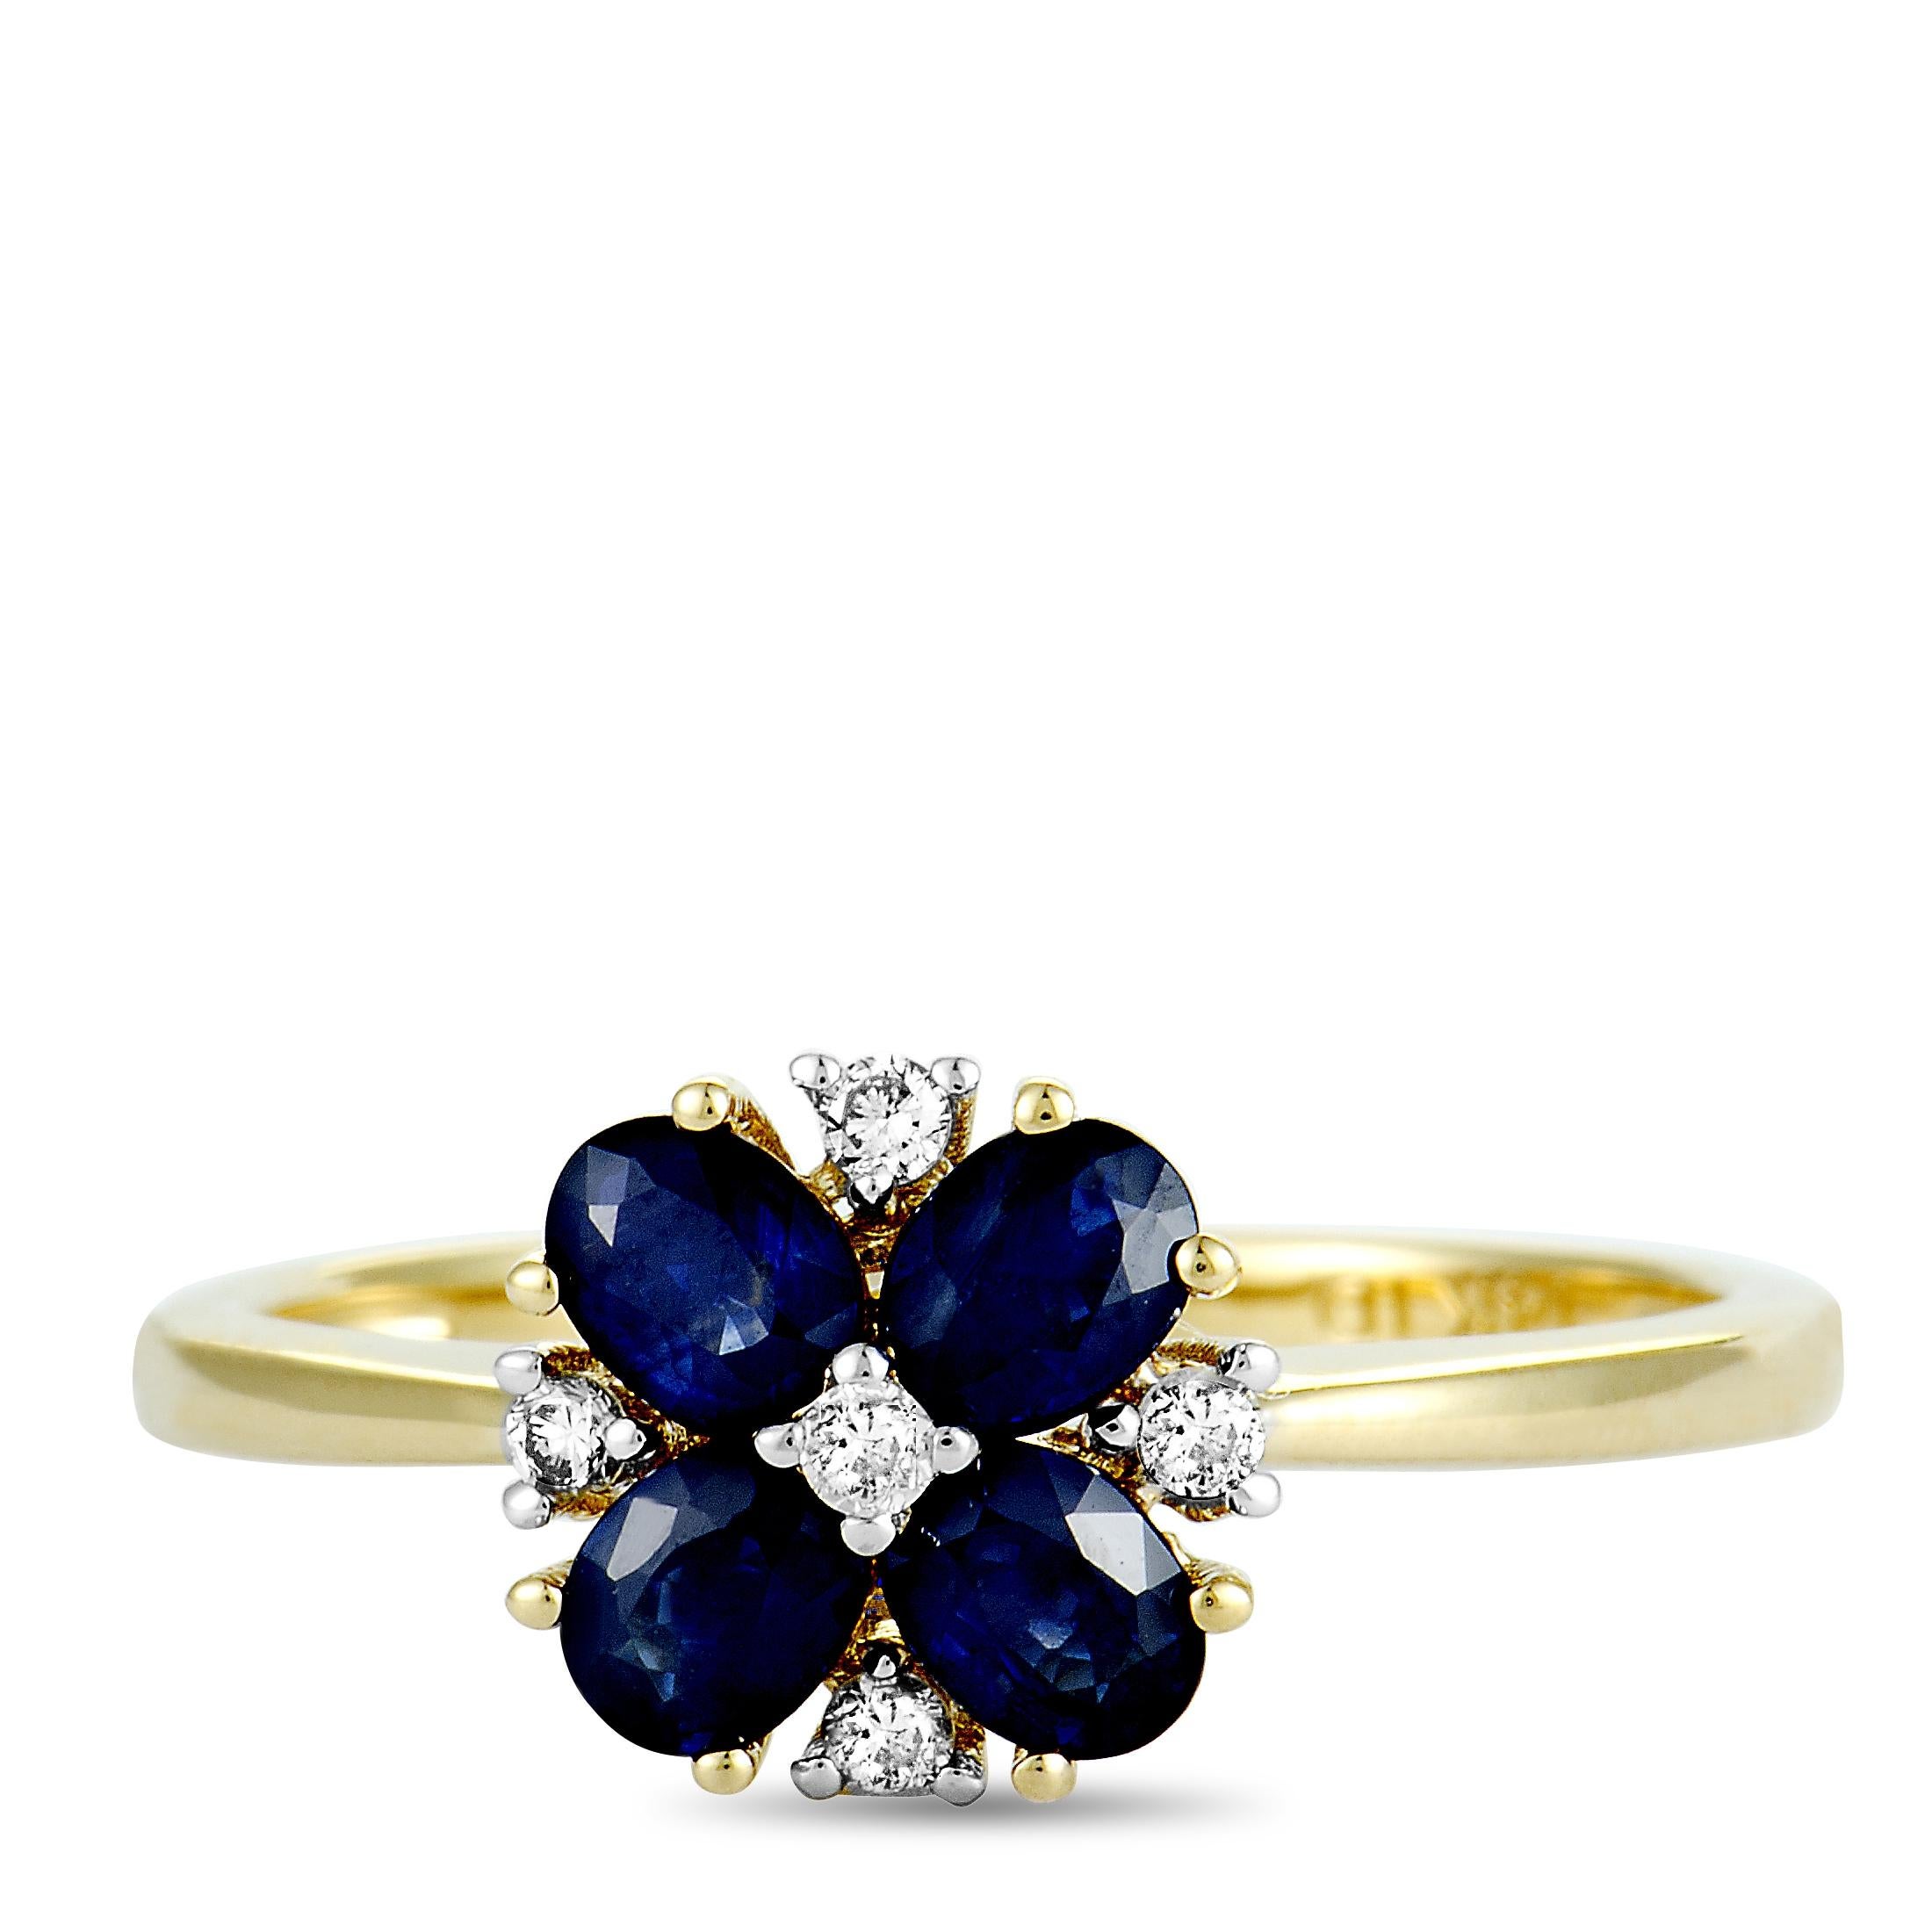 Women's 14 Karat Yellow Gold Diamond and Sapphire Flower Ring